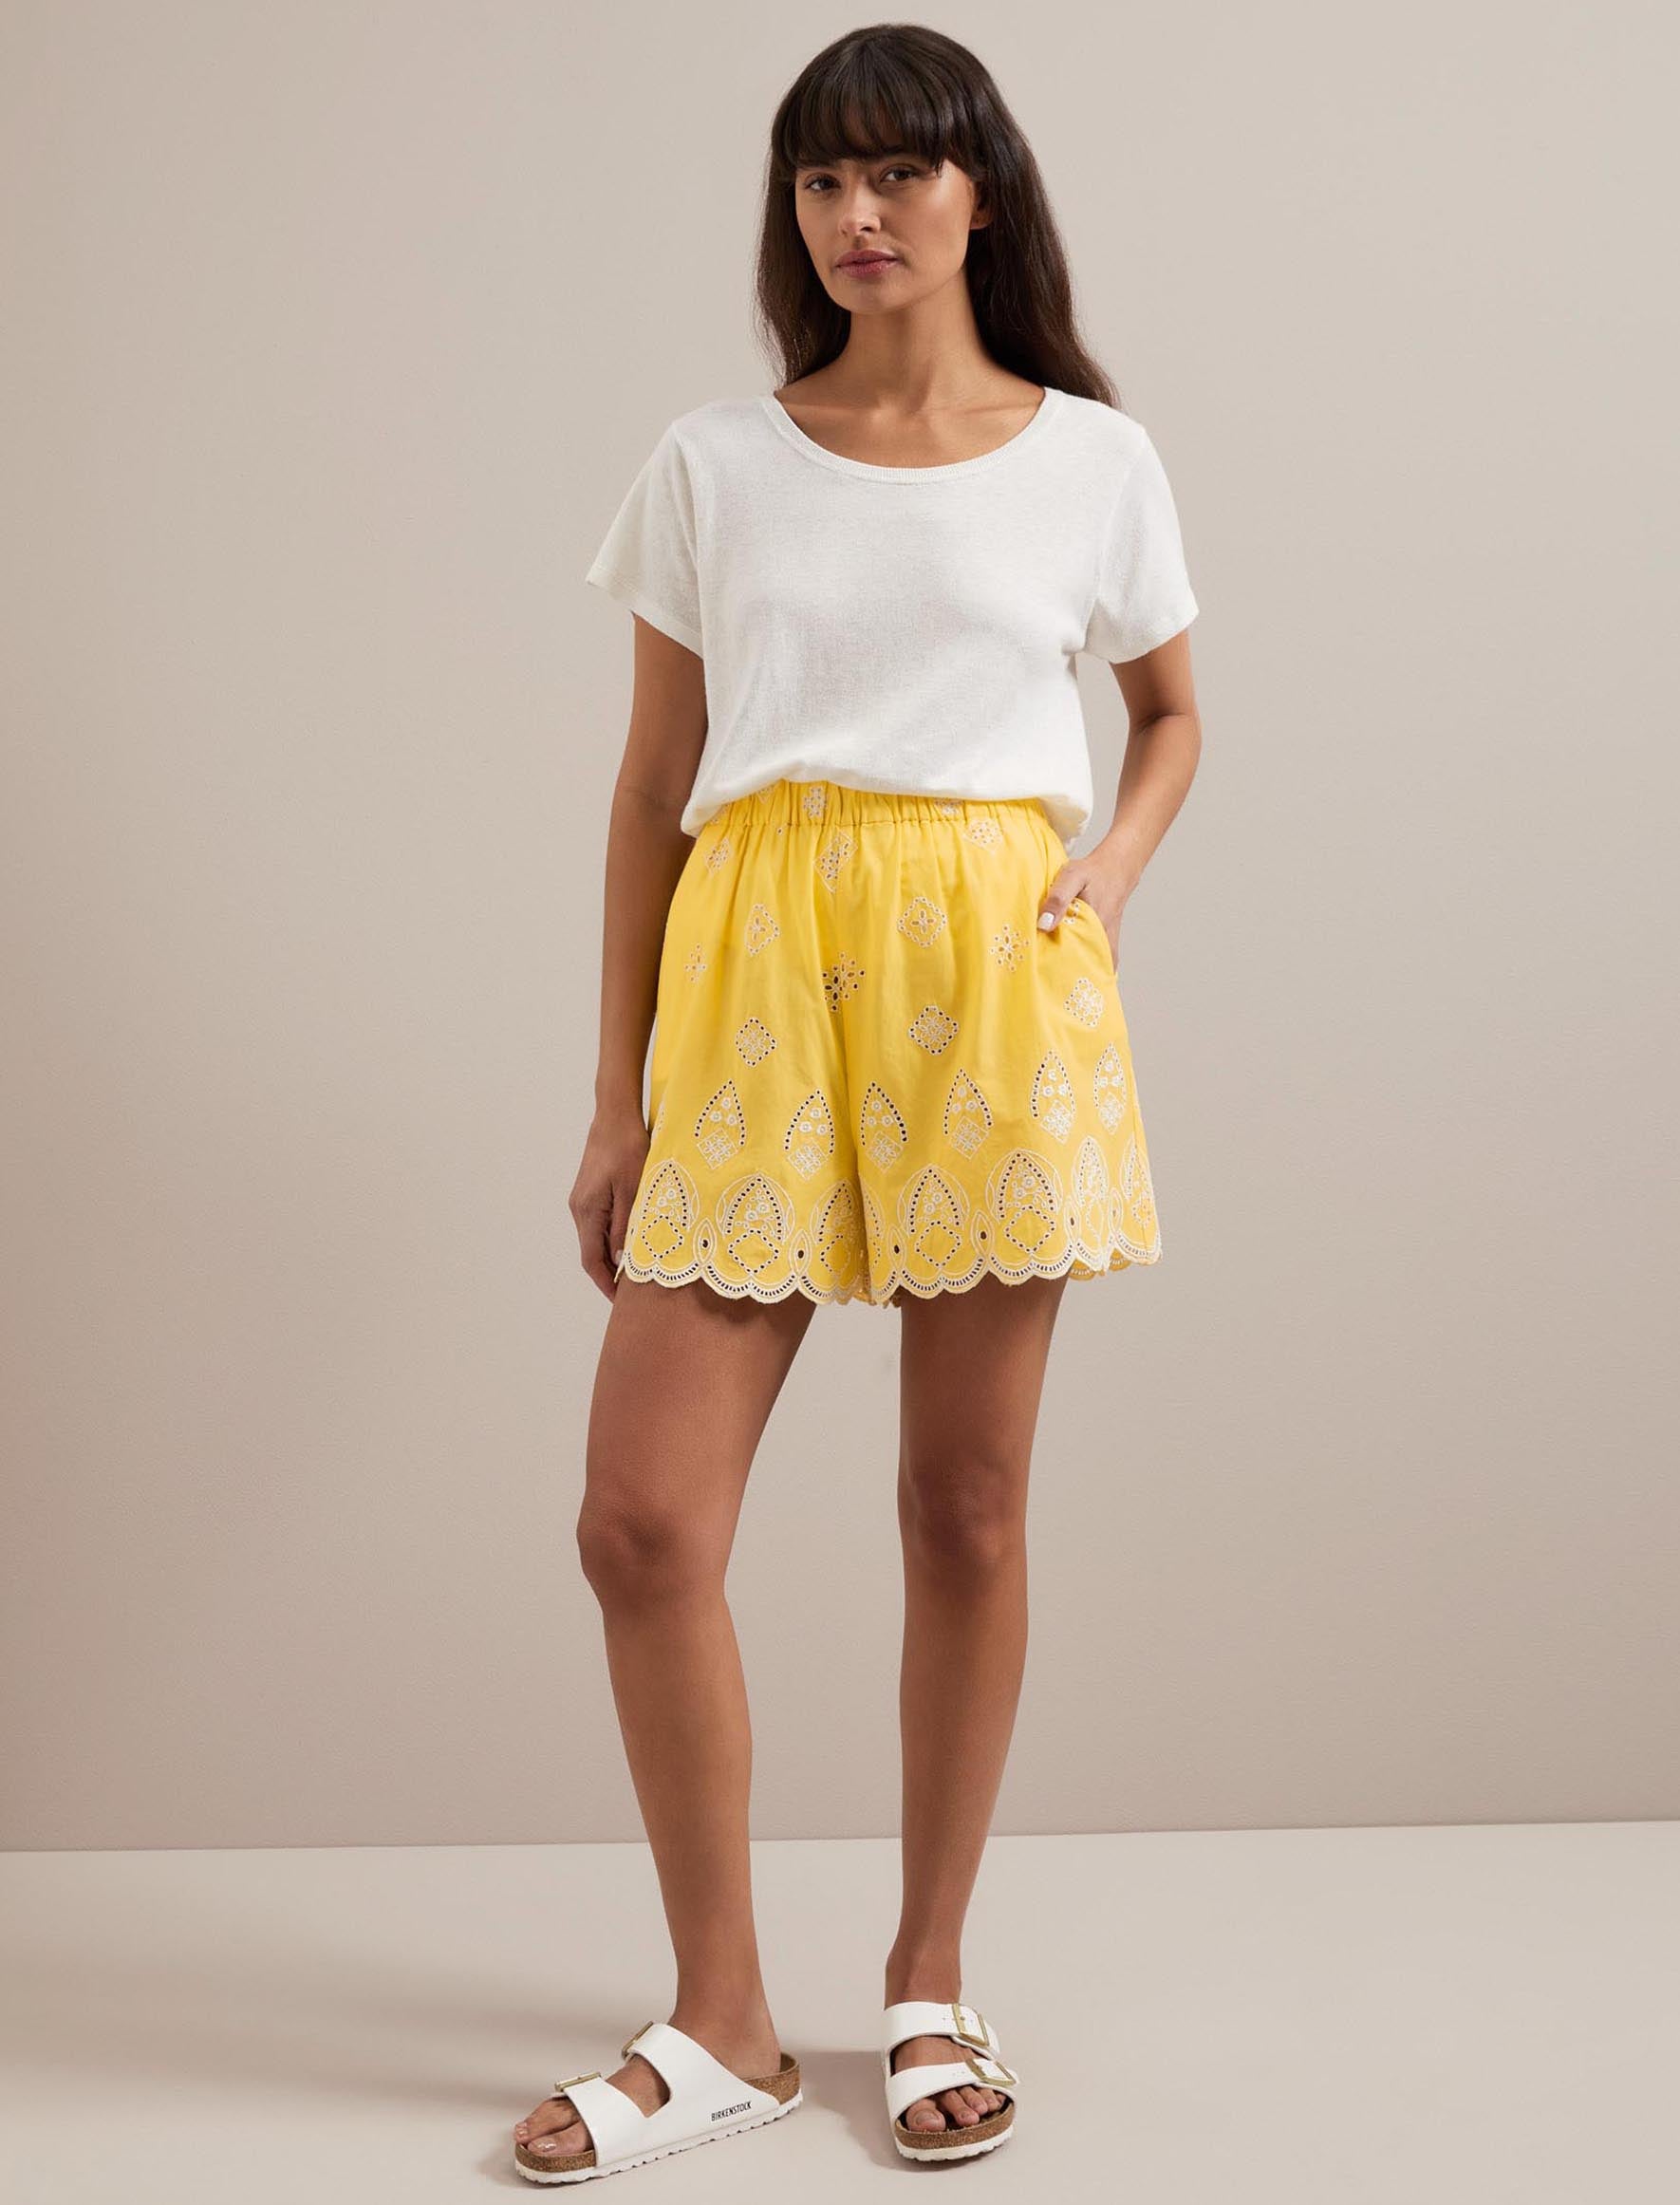 Cefinn Bonnie Organic Cotton Shorts - Yellow White